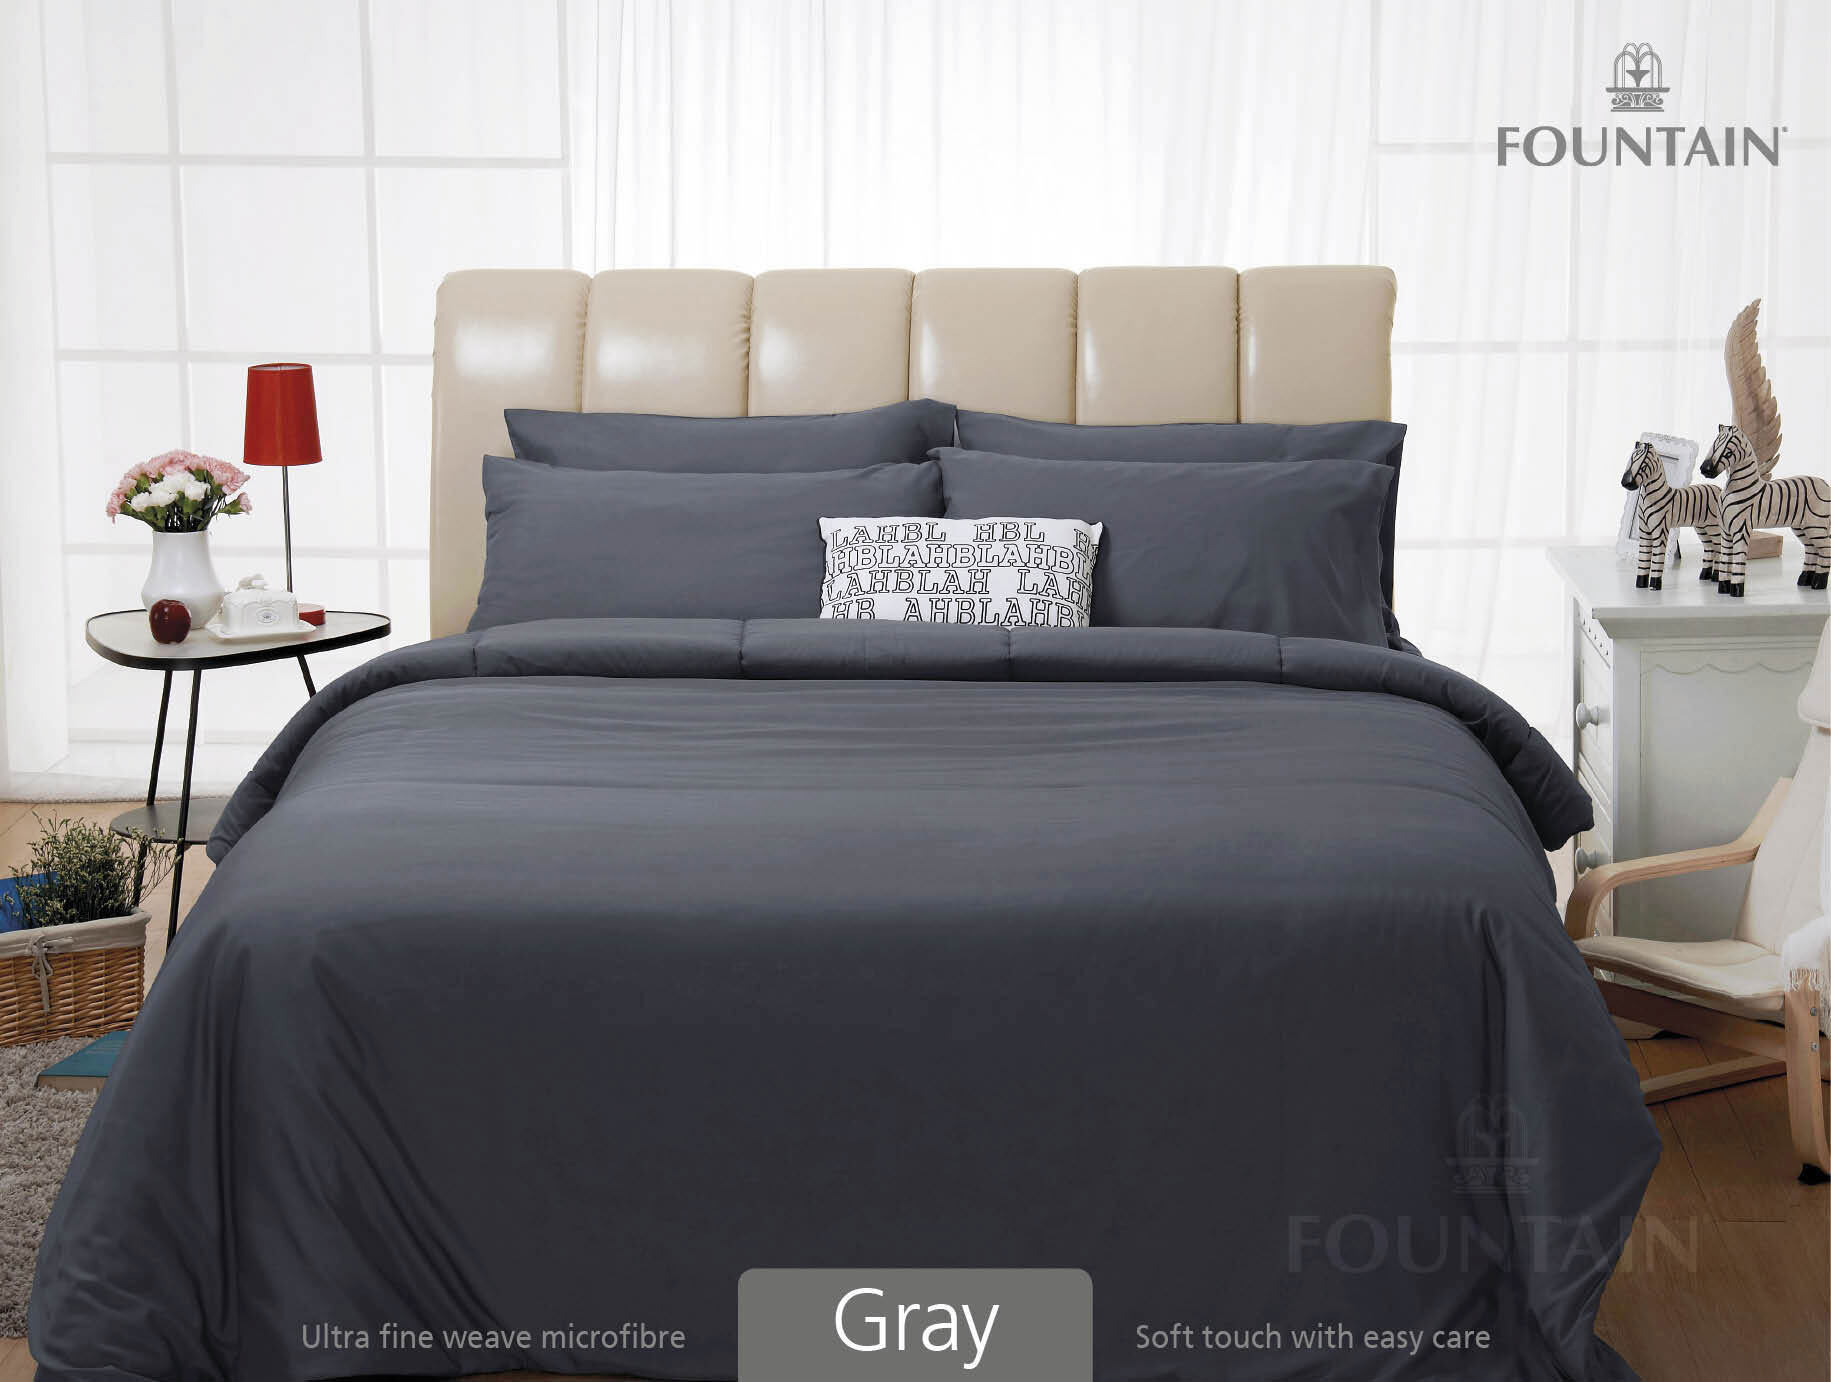 FOUNTAIN ผ้านวม + ชุดผ้าปู ผ้าปู ที่นอน แท้ 100% FTC สีพื้น เขียว Green Gray เทา ขนาด 3.5 5 6ฟุต ชุดเครื่องนอน ผ้านวม ผ้าปูที่นอน wonderful bedding  สี → Gray3ขนาดสินค้า 3.5 ฟุต